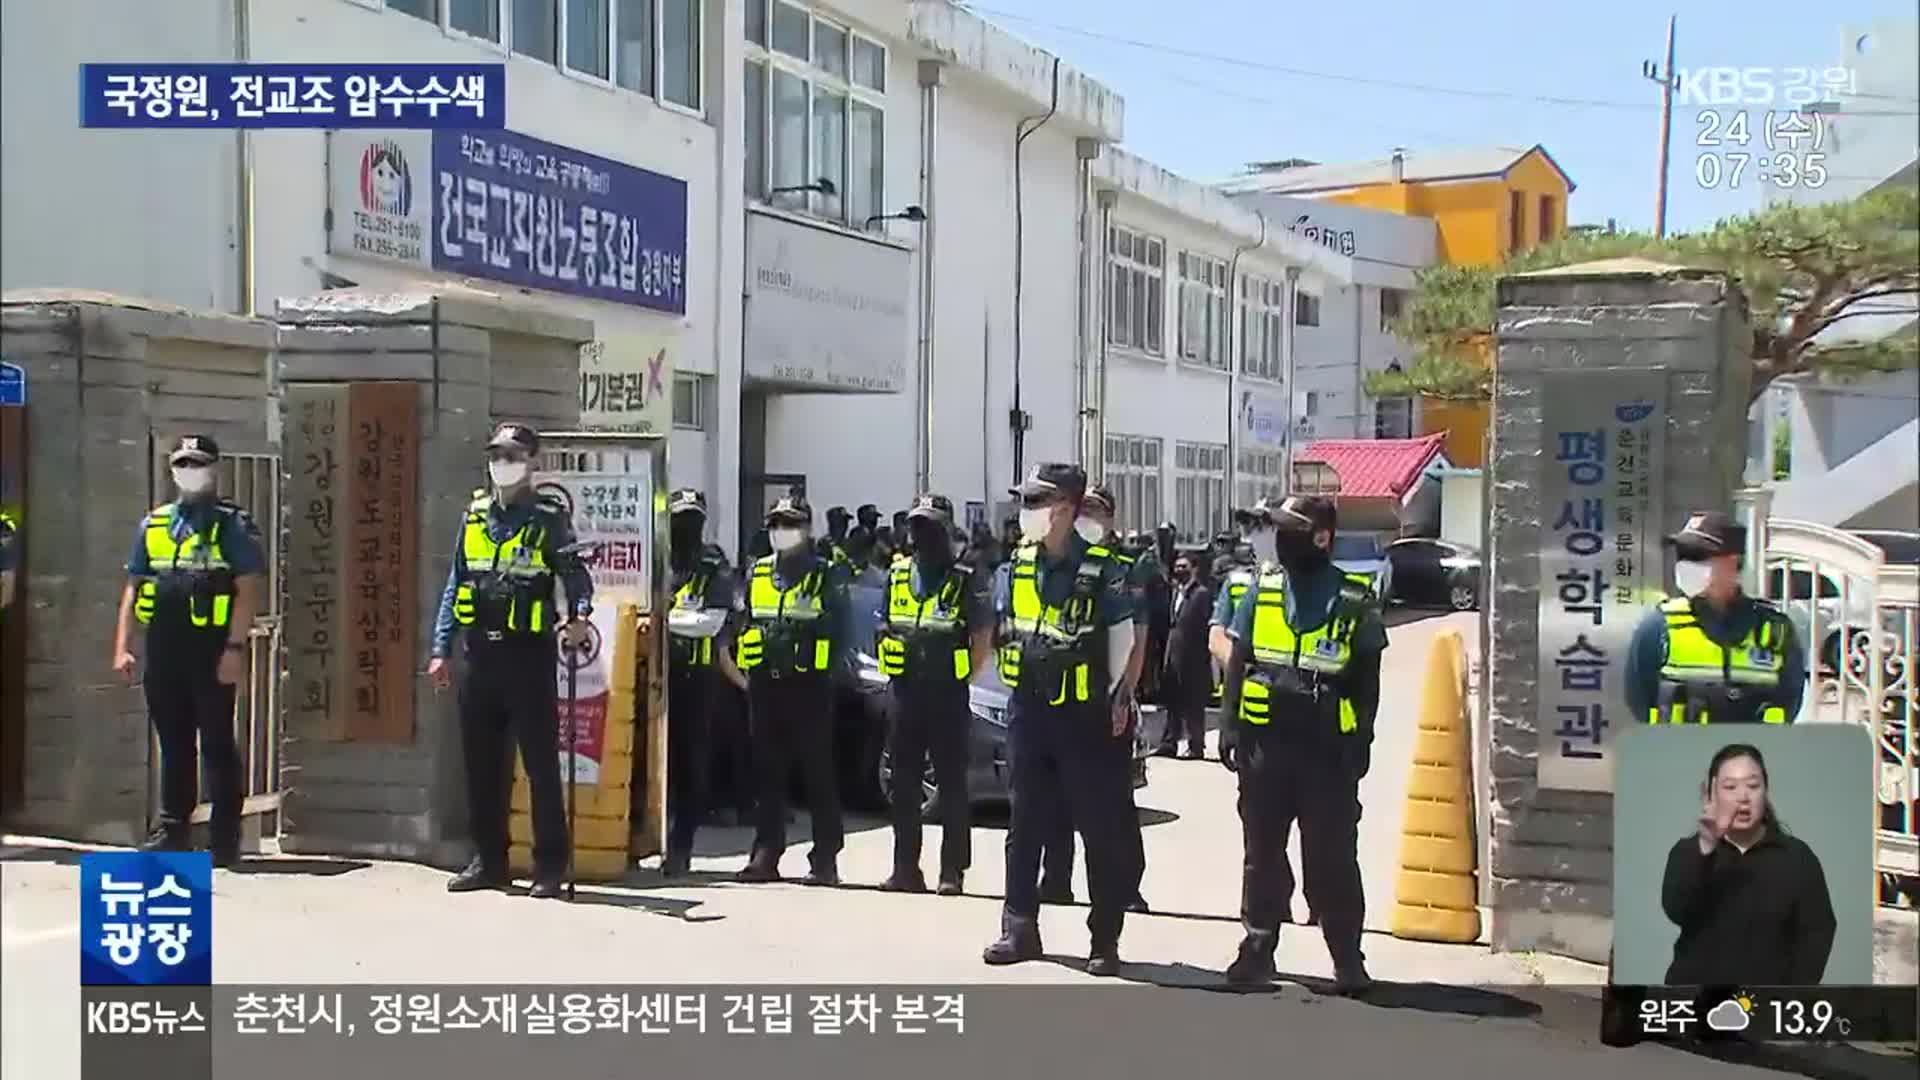 국정원, 전교조 압수수색…“북한 연계 지하조직” vs “공안 몰이”